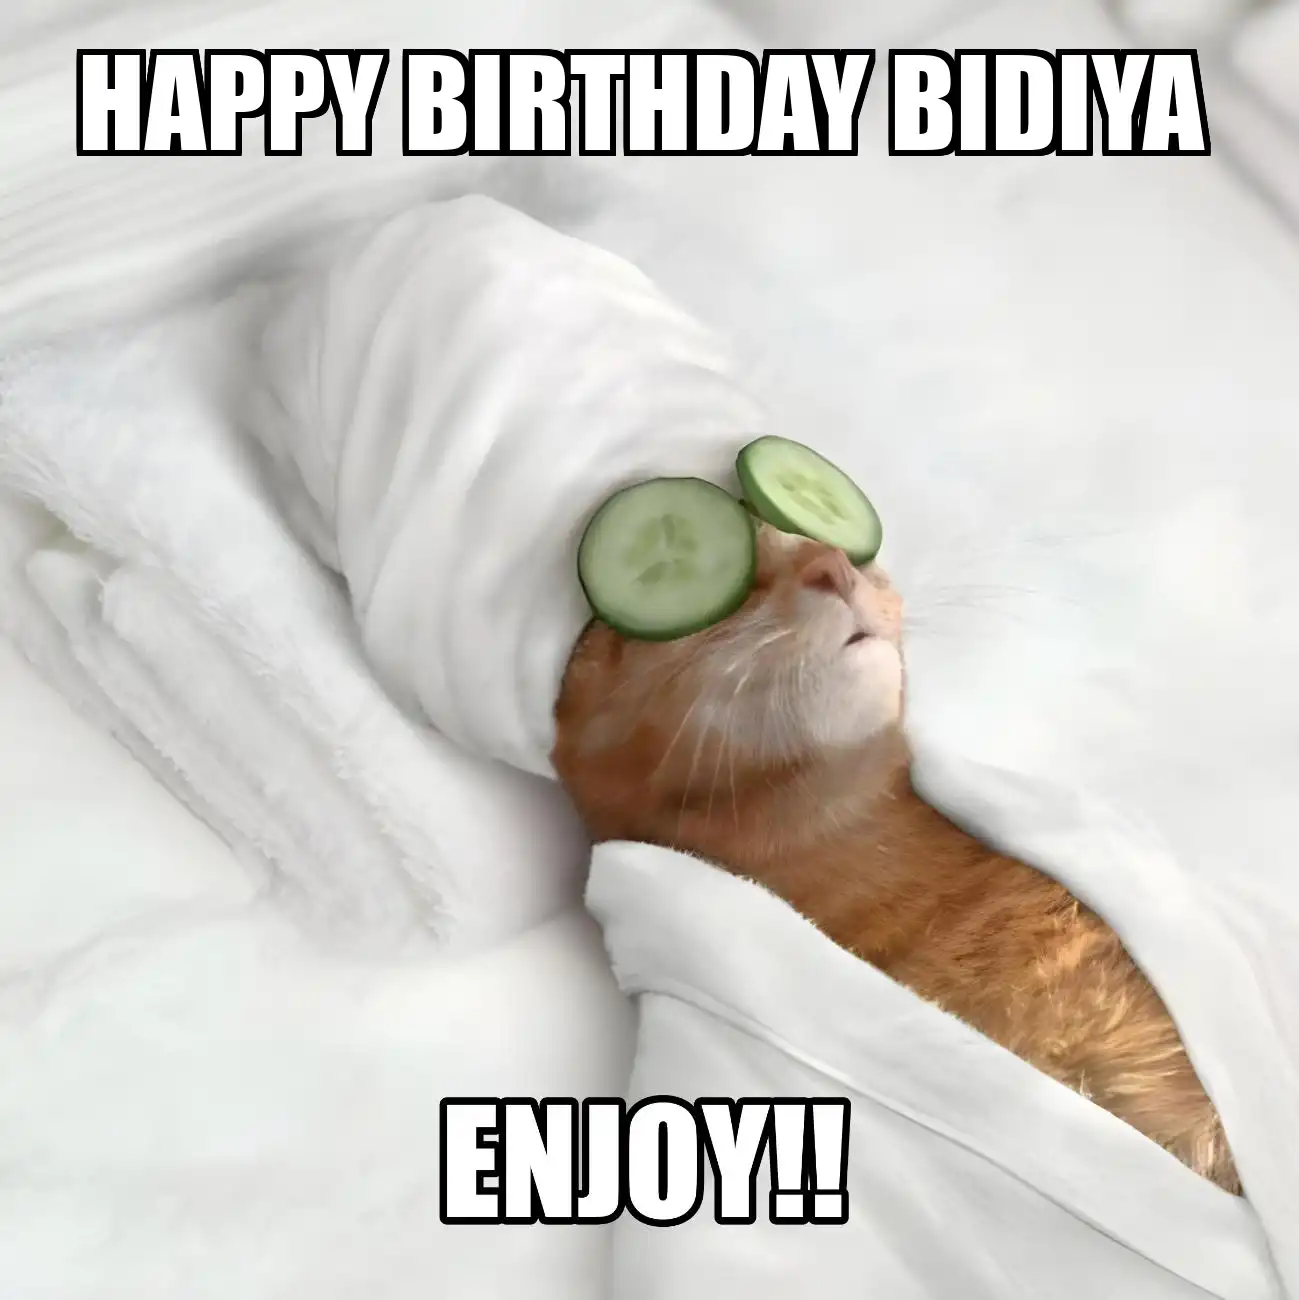 Happy Birthday Bidiya Enjoy Cat Meme